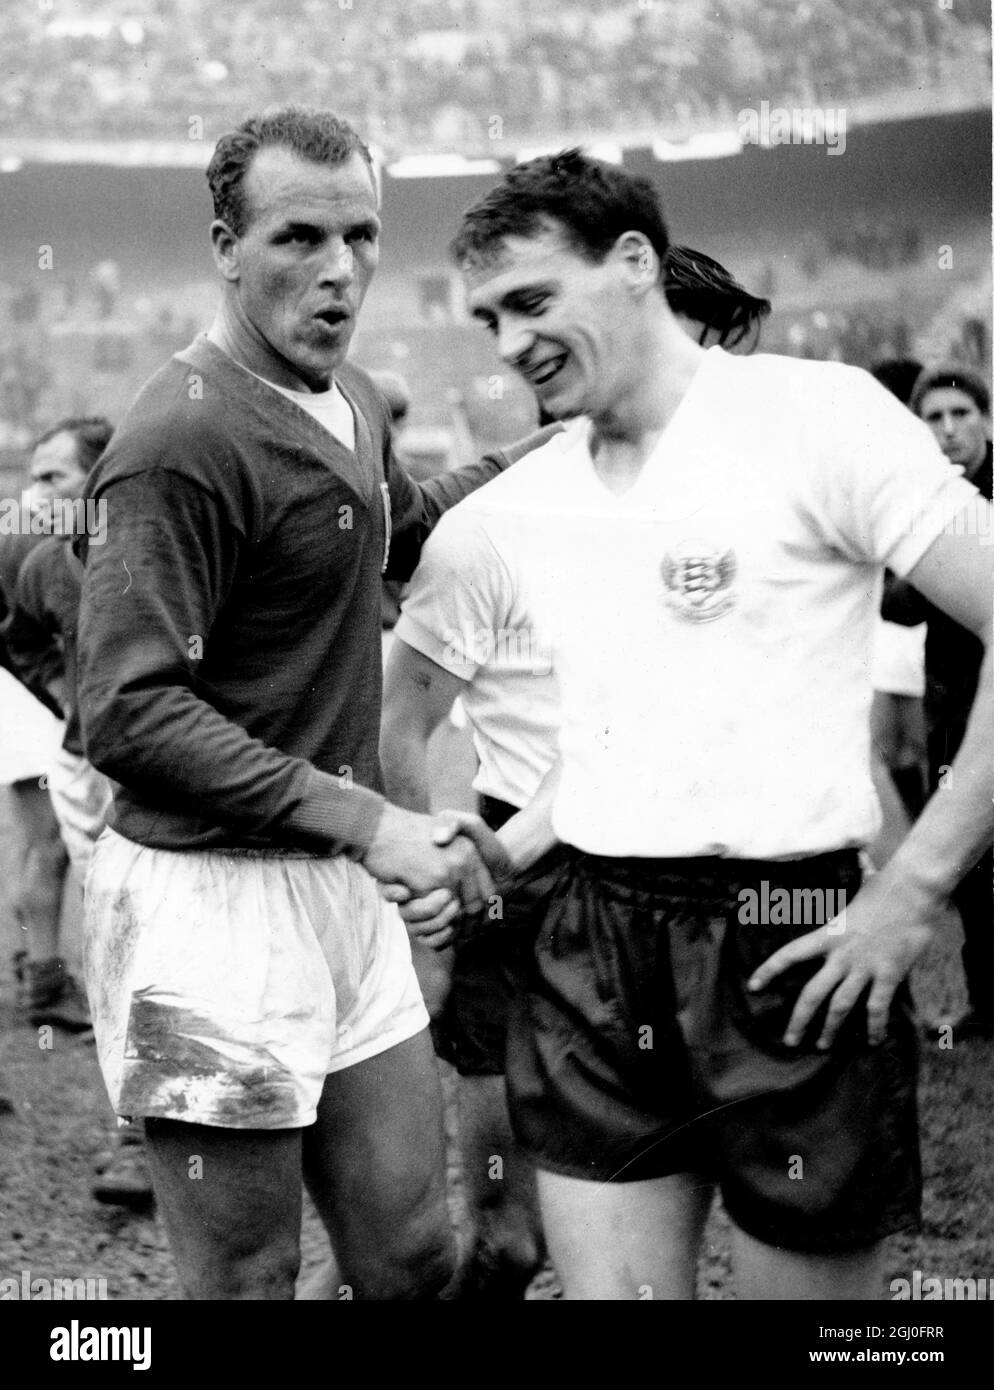 Die italienische Liga schlug die englische Fußballliga in Mailand mit vier Toren zu zwei. Foto zeigt John Charles (links) von der italienischen Liga-Mannschaft, die sich mit Bobby Robson von der englischen Football League-Mannschaft die Hände schüttelt. November 1960 Stockfoto